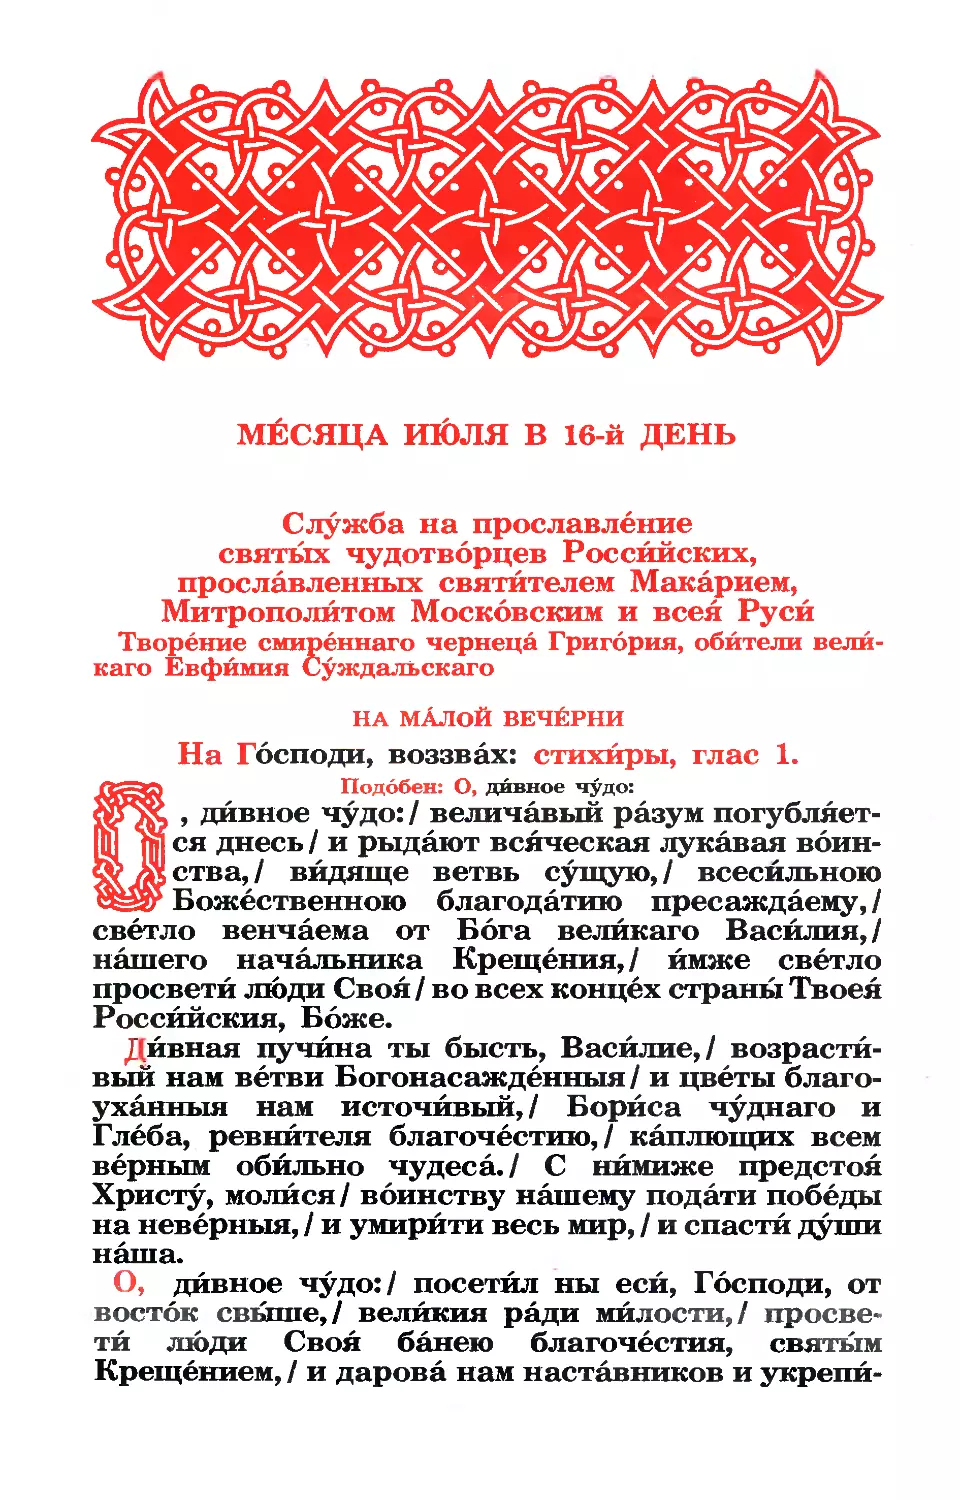 16. (+ Собор Российских чуд., прославленных свт. Макарием в 1547 и 1549 гг.